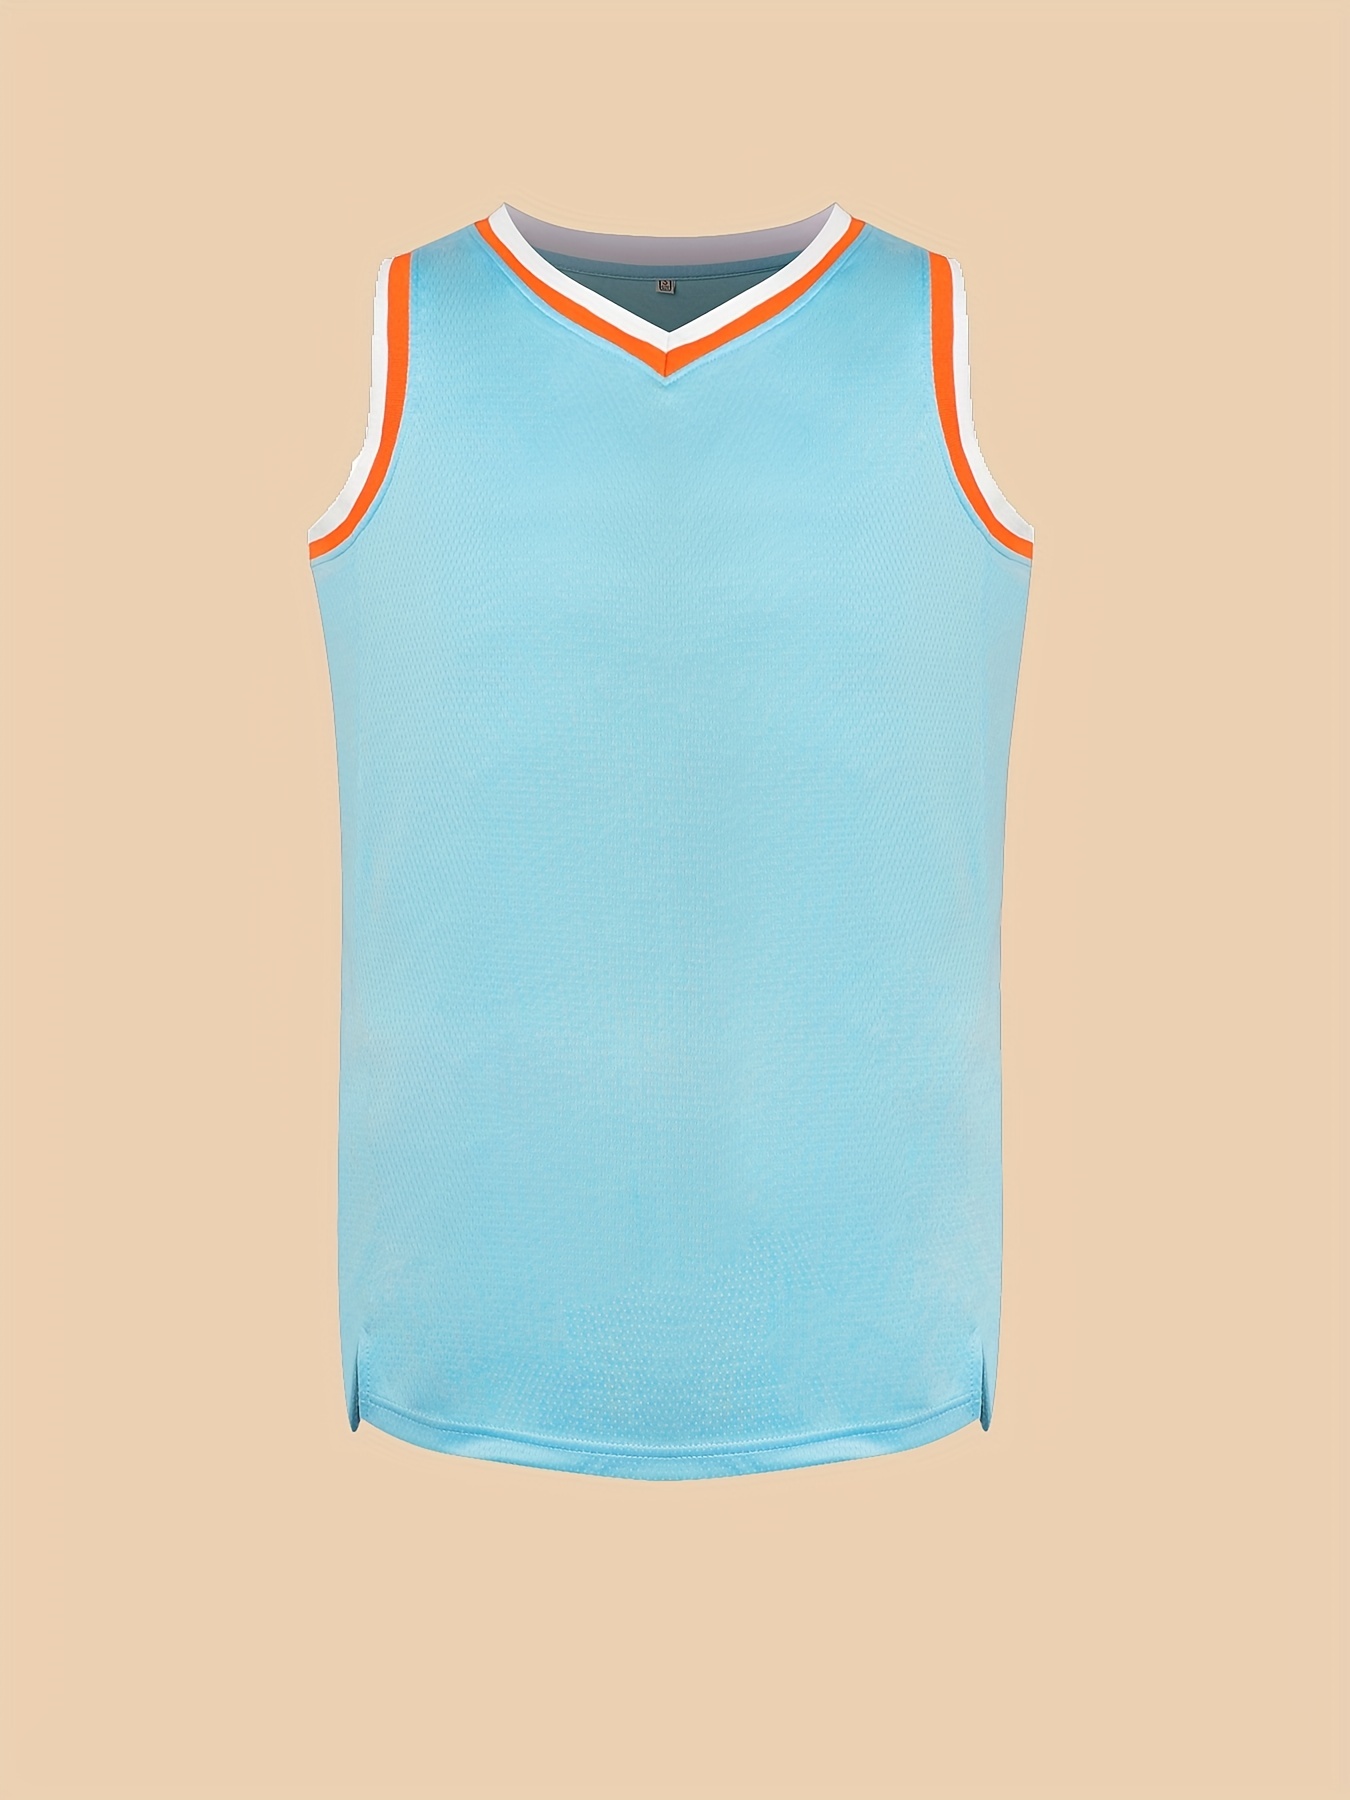 Camiseta de baloncesto para hombre, diseño de cabra 23, hiphop, regalo para  hombres, bordado clásico, para fanáticos del baloncesto